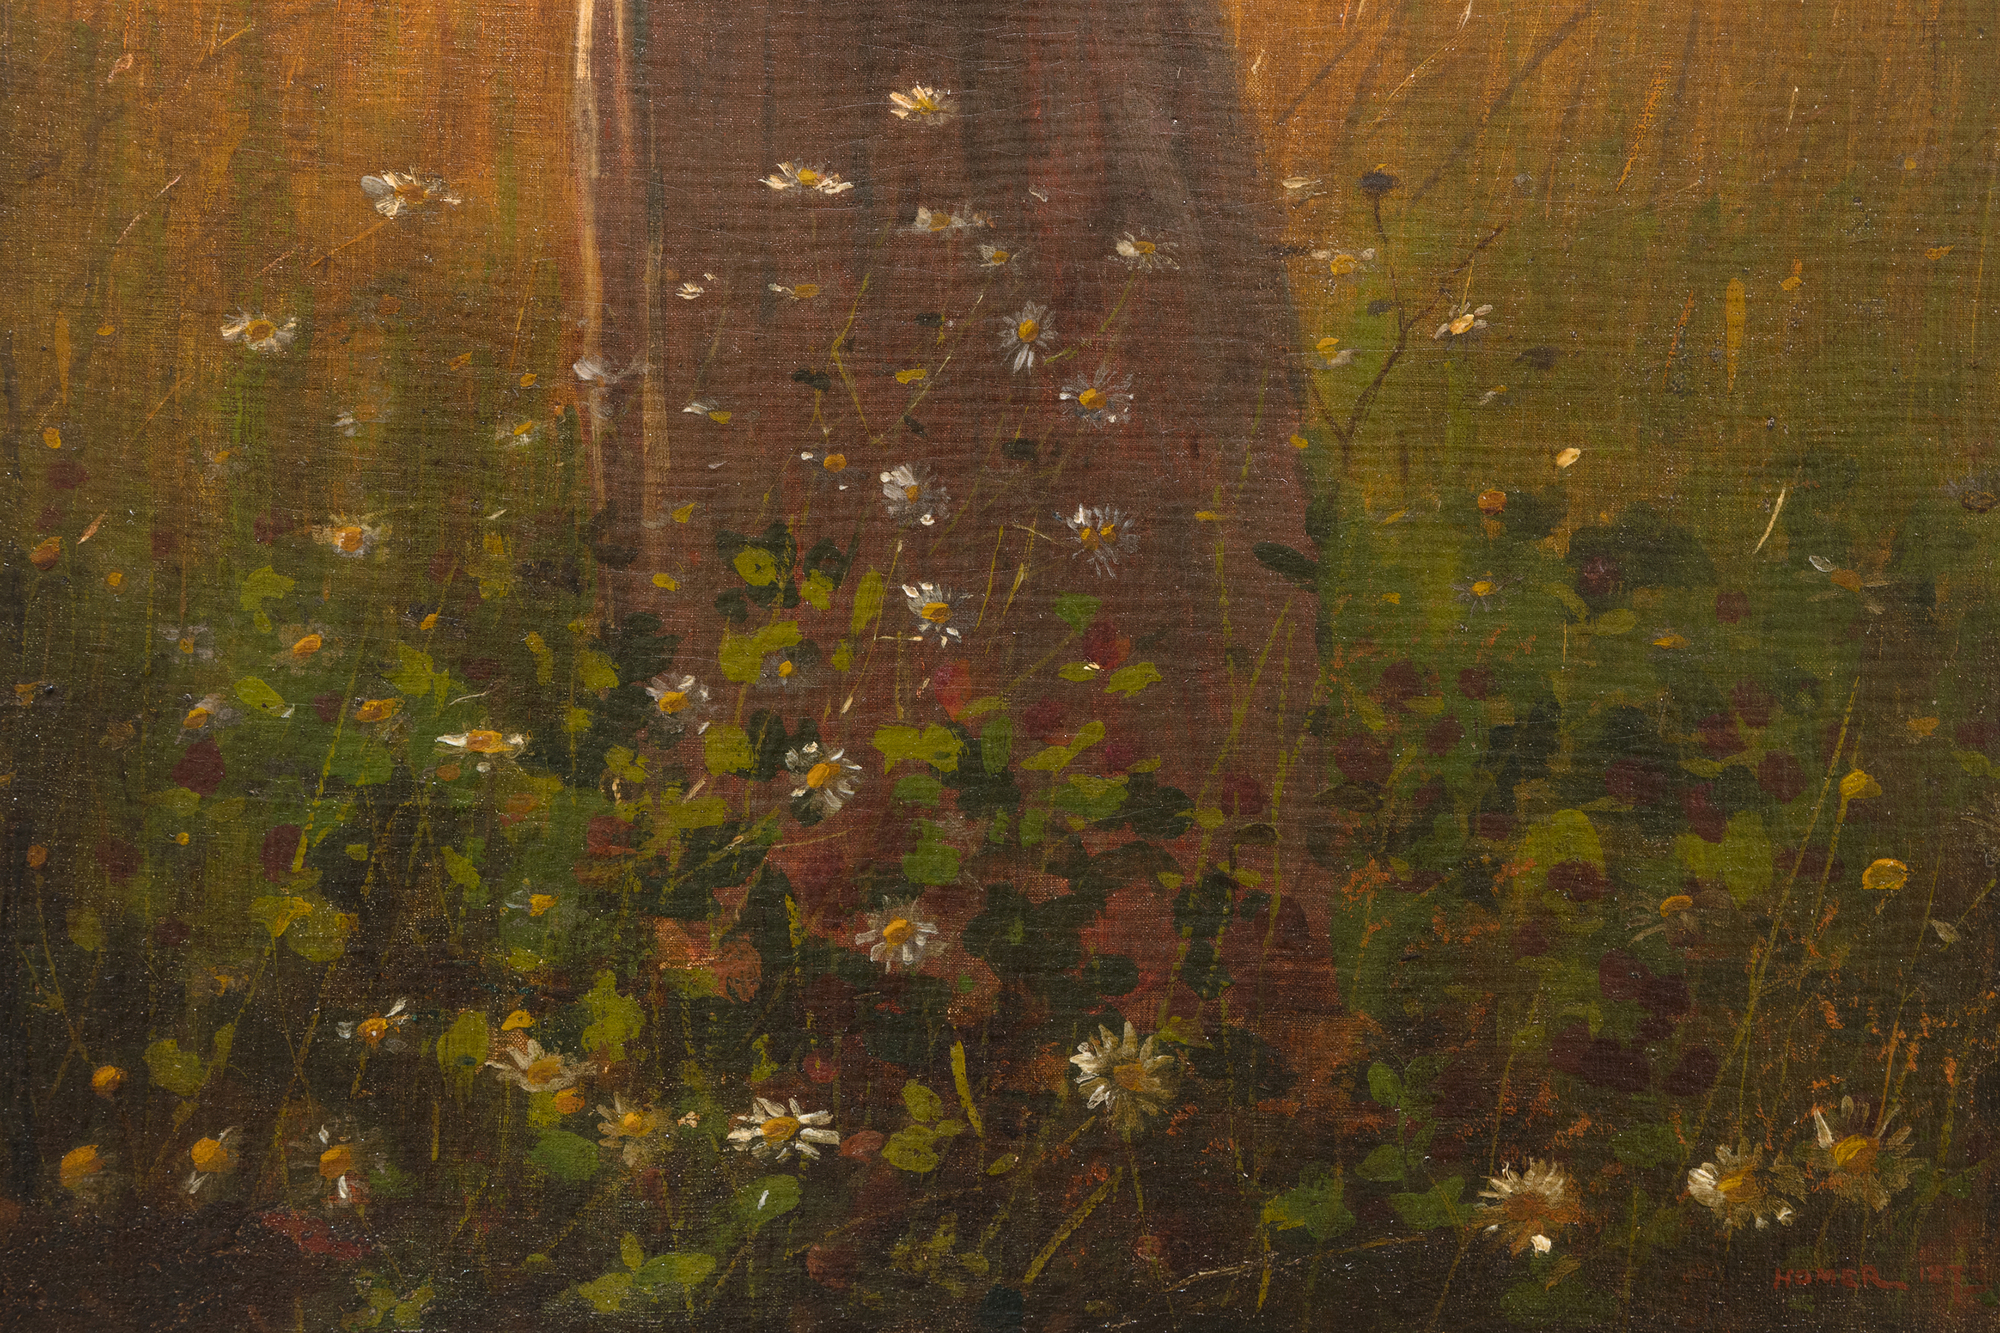 בתחילת שנות ה-70 של המאה ה-19 צייר וינסלו הומר לעתים קרובות סצנות של חיים כפריים ליד כפר חקלאי קטן שנודע במשך דורות בזכות דוכני החיטה המרשימים שלו, הממוקם בין נהר ההדסון לקטסקיל במדינת ניו יורק. כיום הארלי מפורסם הרבה יותר כהשראה לאחת מיצירותיו הגדולות ביותר של הומרוס, Snap the Whip שצויר בקיץ 1872. בין הציורים הרבים האחרים בהשראת האזור, נערה עומדת בשדה החיטה עשירה בסנטימנטים, אך לא סנטימנטלית מדי. הוא מתקשר ישירות למחקר משנת 1866 שצויר בצרפת בשם "בשדות החיטה", ומחקר נוסף שצויר שנה לאחר מכן לאחר שובו לאמריקה. אבל הומרוס היה ללא ספק גאה ביותר בזה. זהו דיוקן, חדר לימוד תלבושות, ציור ז'אנרי במסורת הגדולה של הציור הפסטורלי האירופי, וטור דה פורס מואר בדרמטיות, ספוג באור השעה הזוהר הדועך במהירות, מצופה בתווים פרחוניים ונגיעות קוצים של חיטה. בשנת 1874 שלח הומרוס ארבעה ציורים לתערוכה של האקדמיה הלאומית לעיצוב. אחד מהם נקרא "ילדה". יכול להיות שזה לא זה?